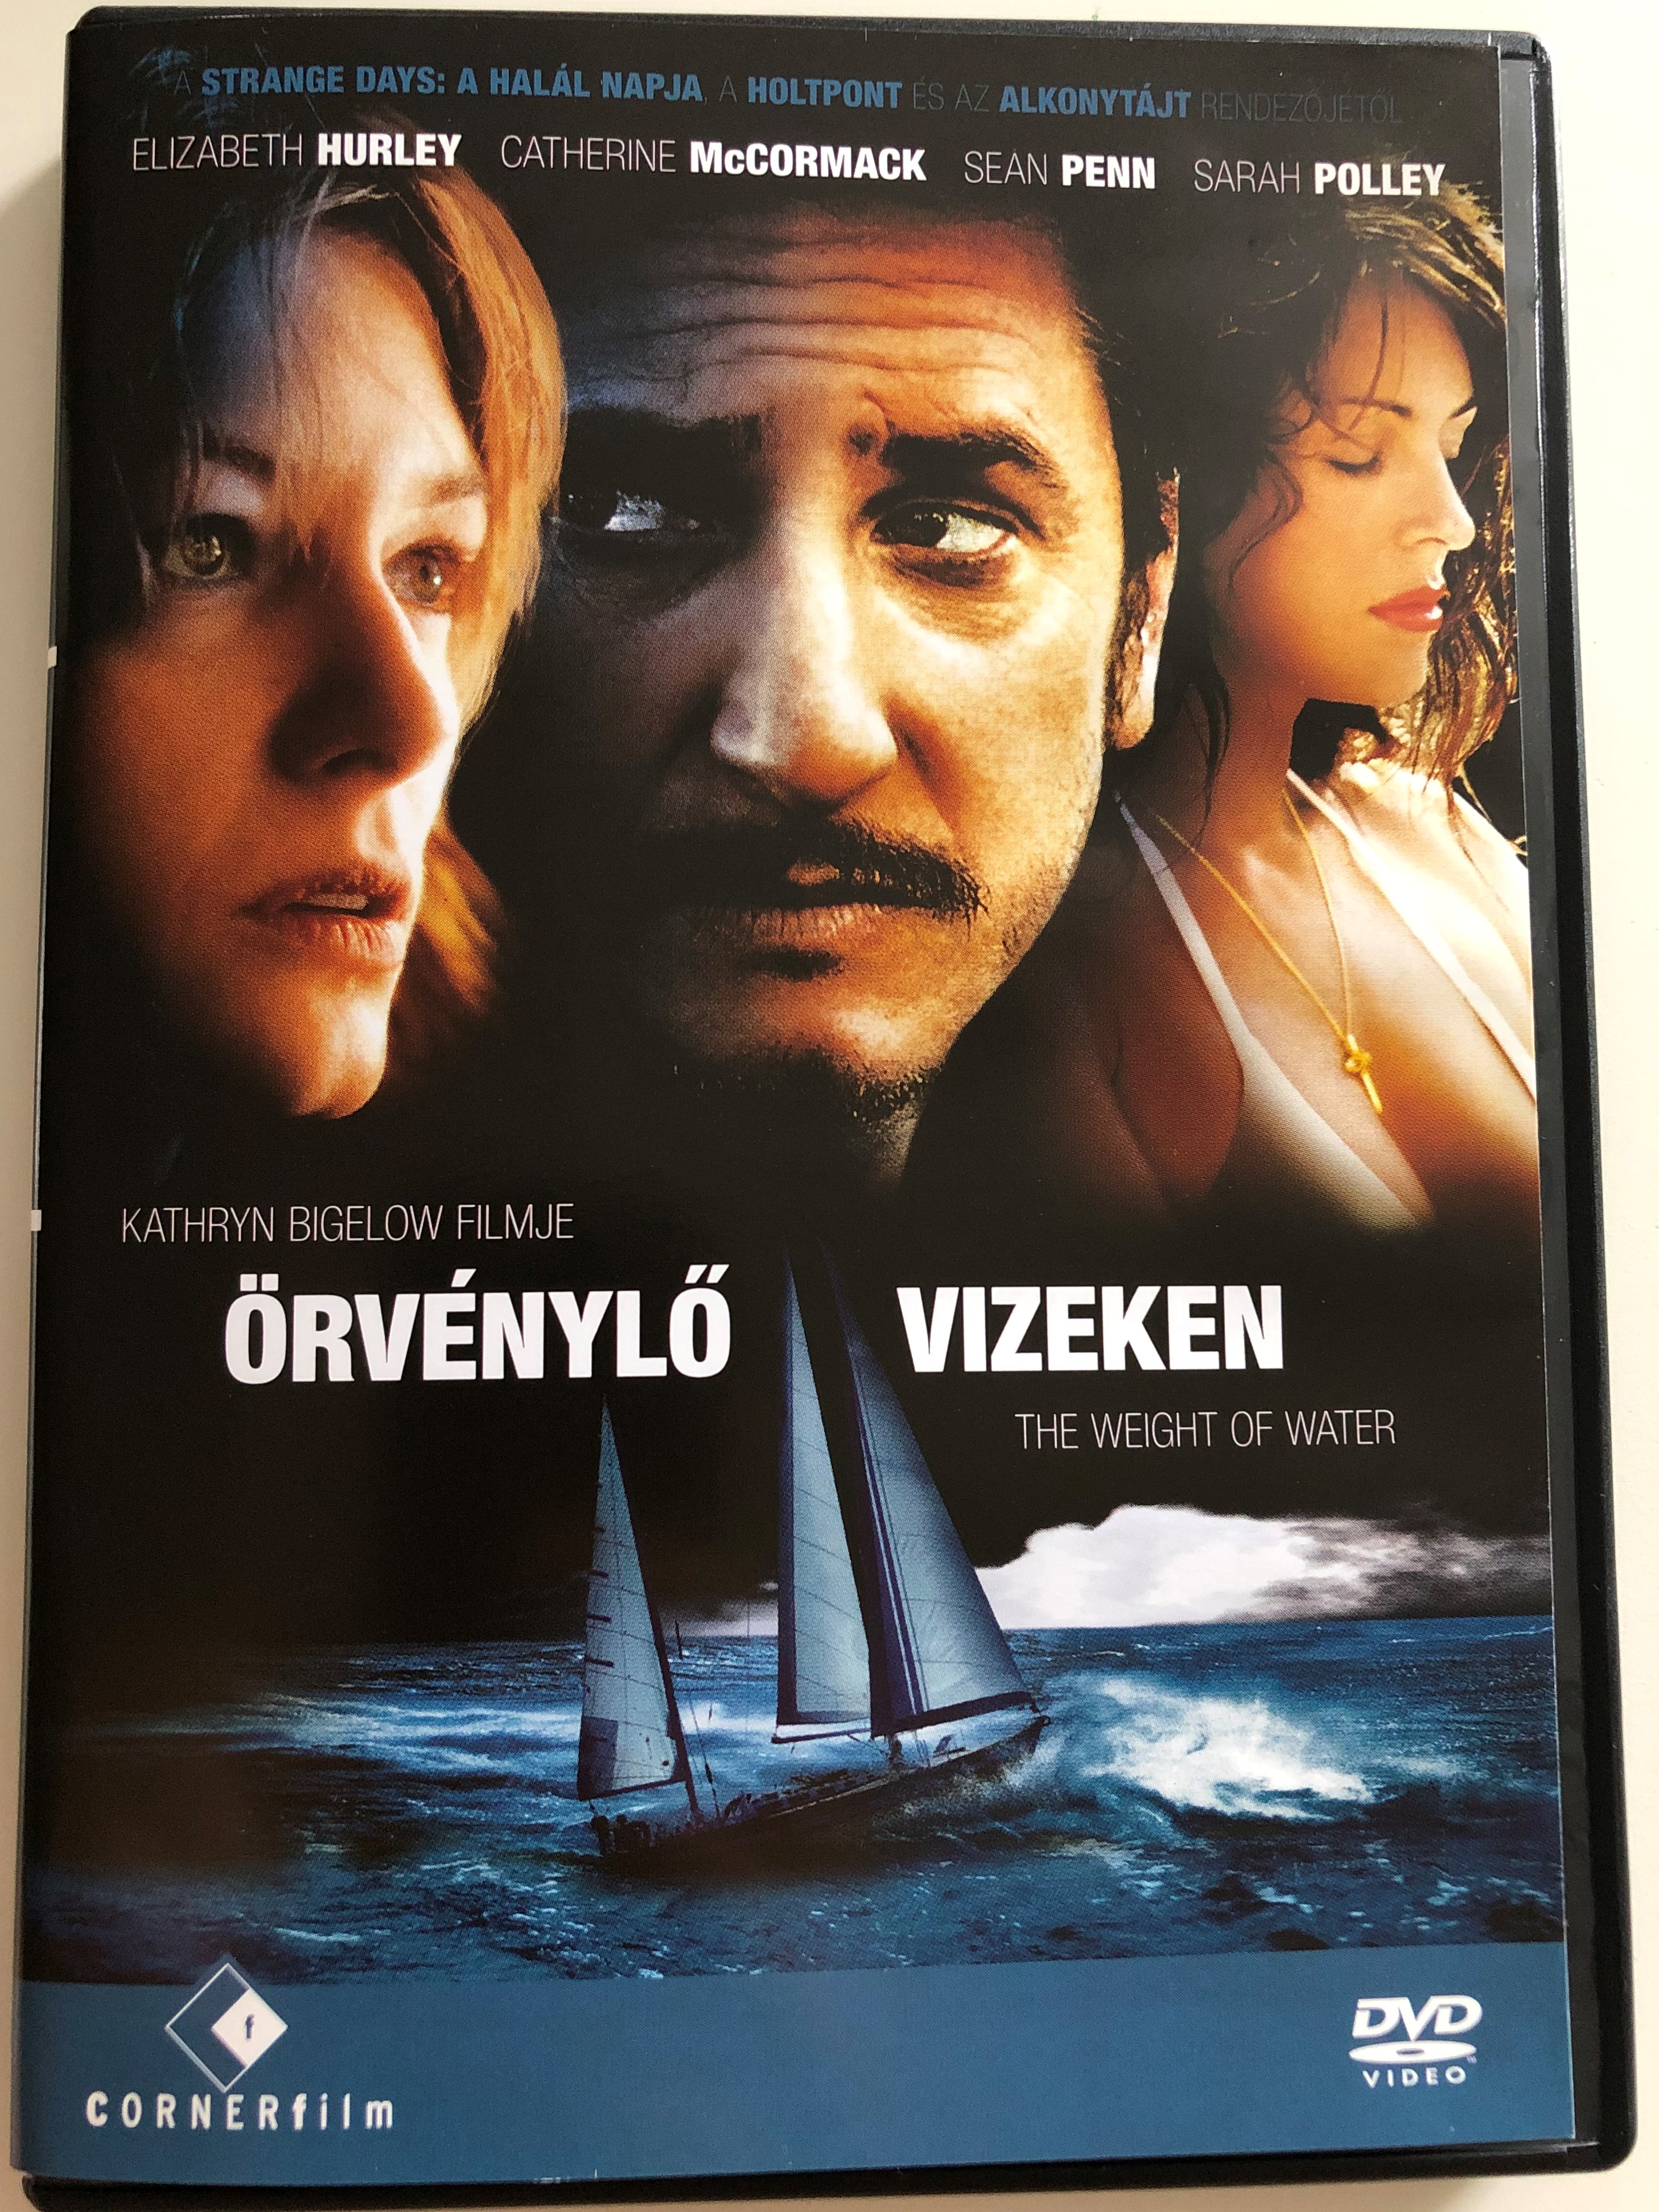 the-weight-of-water-dvd-2000-rv-nyl-vizeken-directed-by-kathryn-bigelow-starring-elizabeth-hurley-catherine-mccormack-sean-penn-sarah-polley-1-.jpg